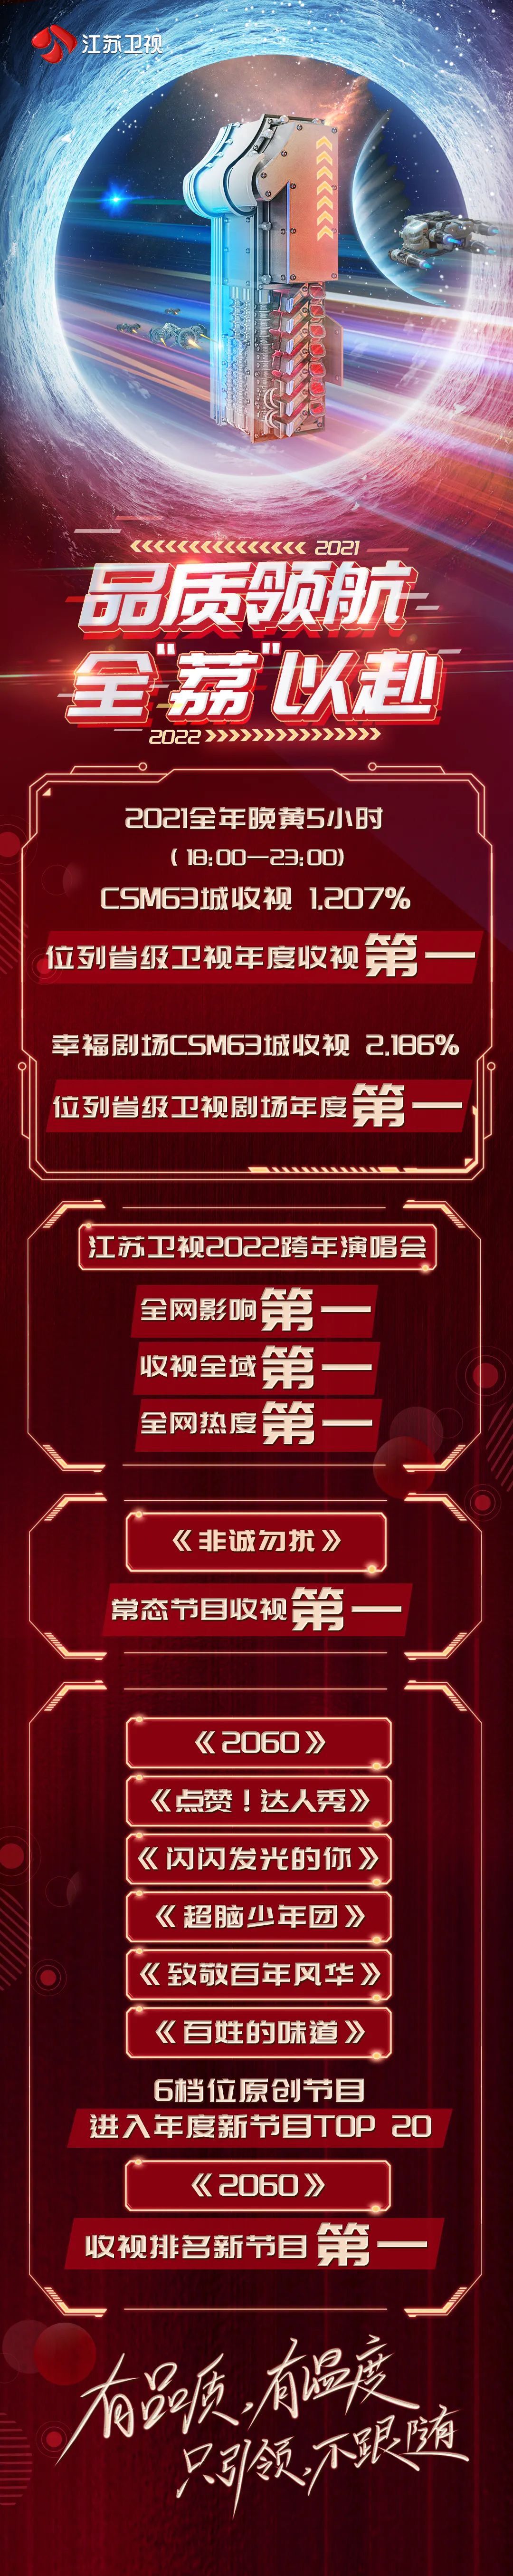 2021年江苏卫视收视冠军csm63城平均收视破2.2%